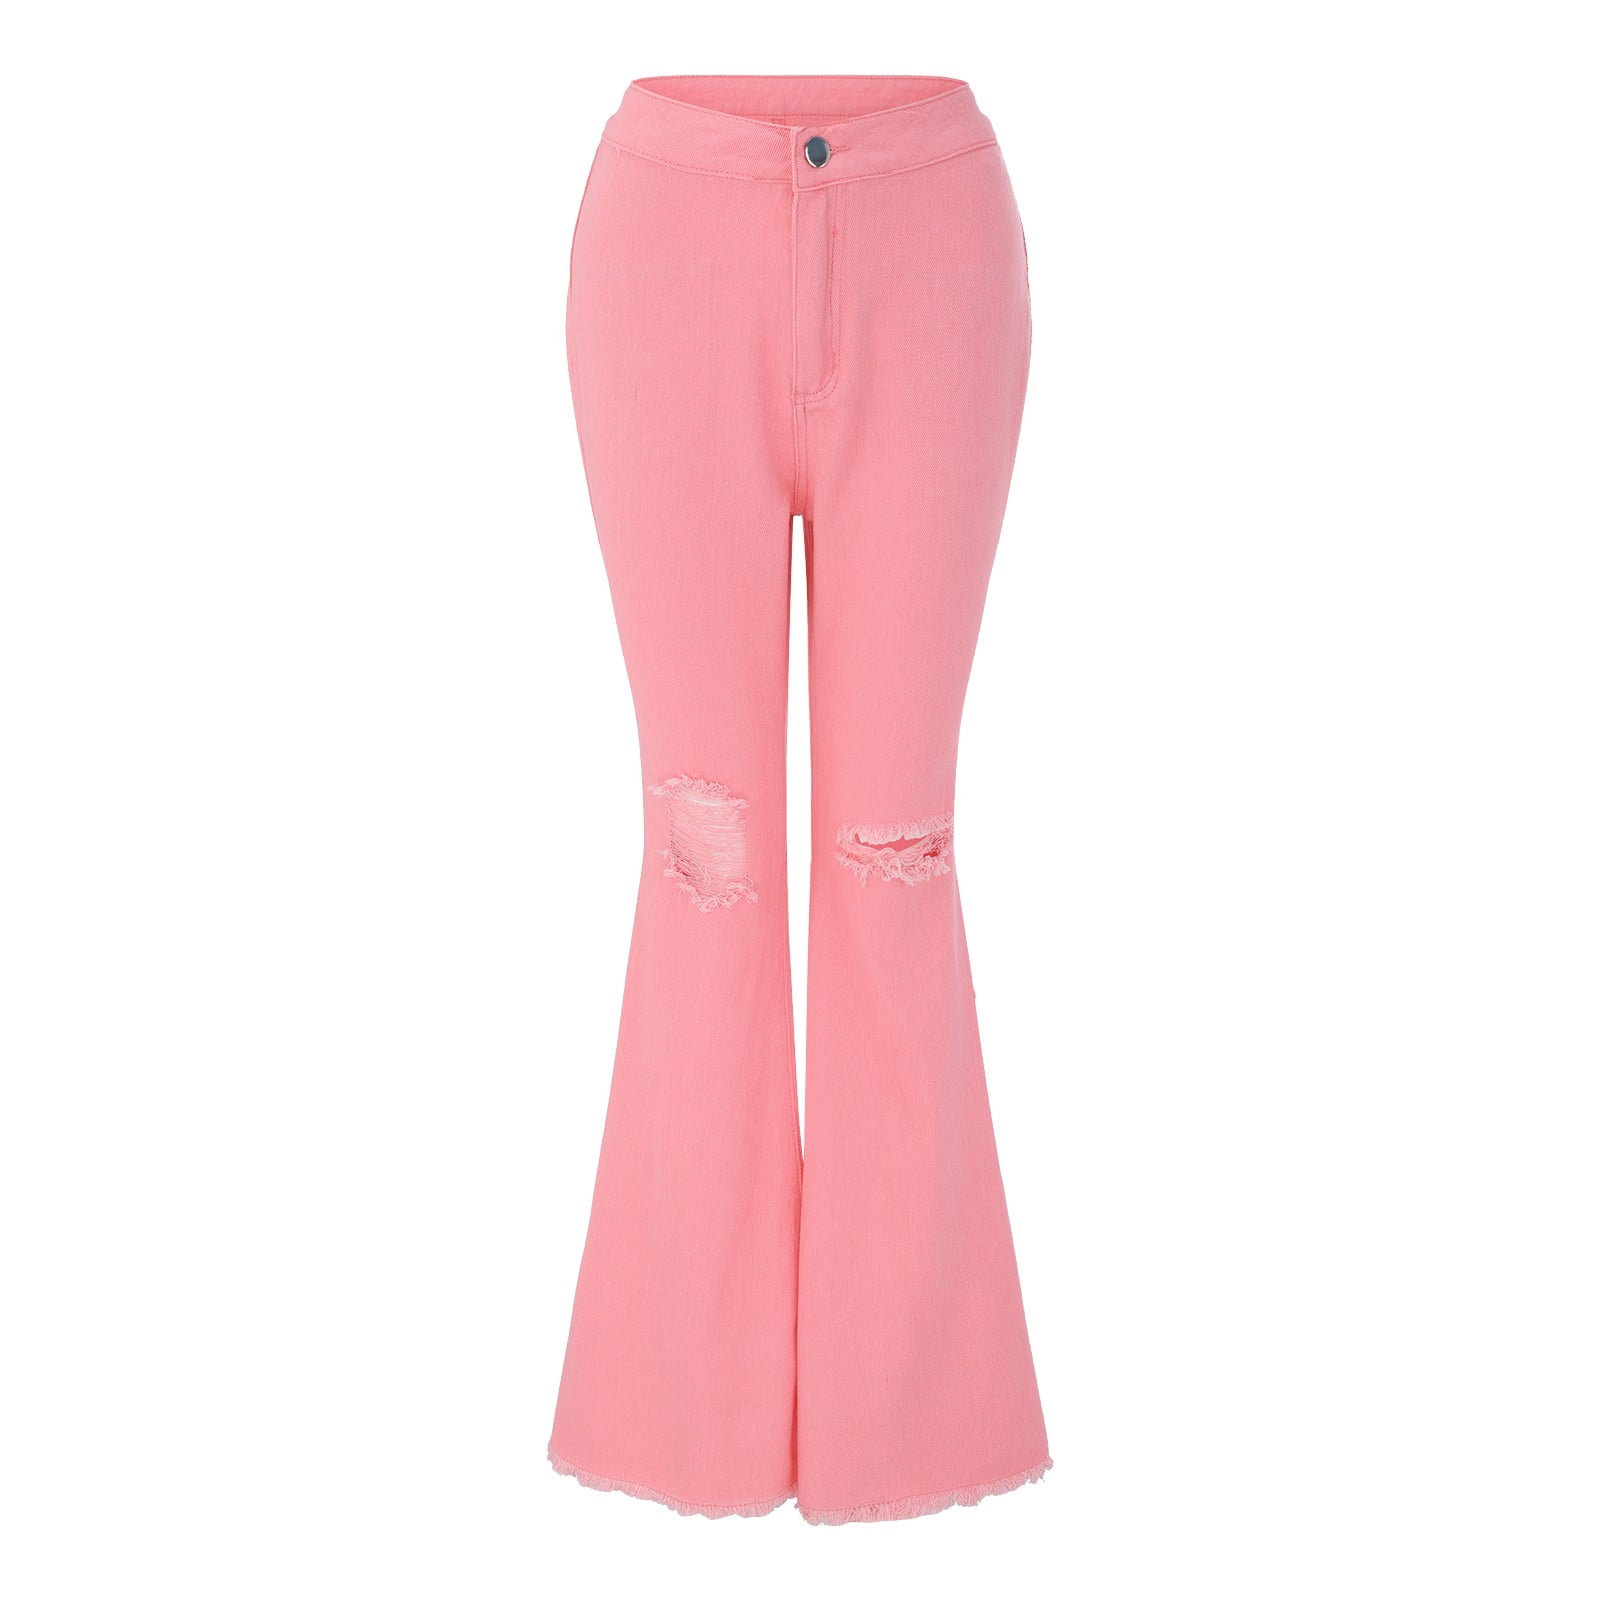 Stretch Denim fabric Classic, bright pink